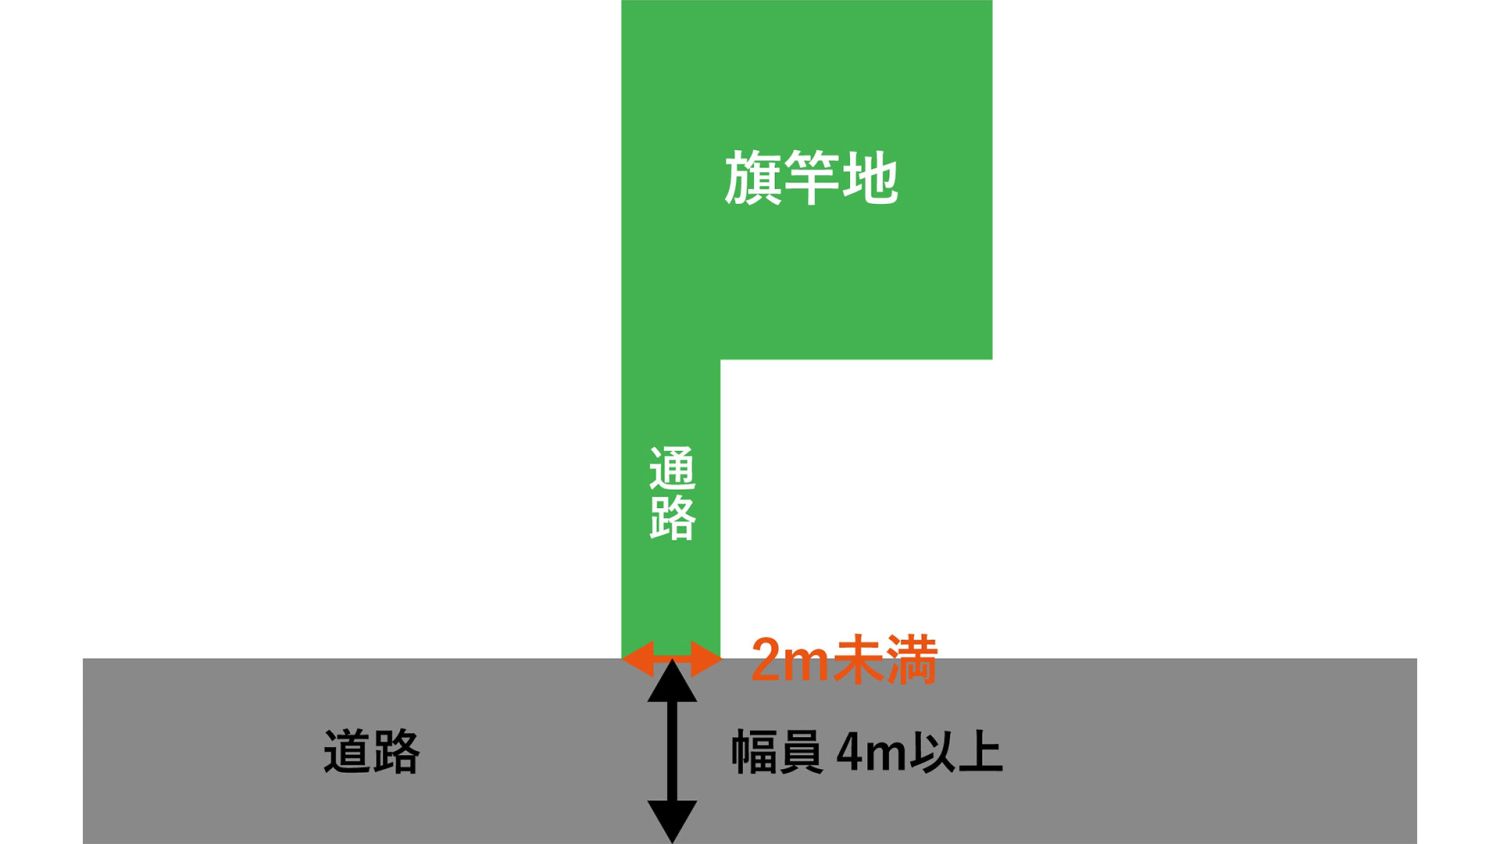 福岡で旗竿地の建て替えをおこなう注意点【メリットとデメリットを解説】